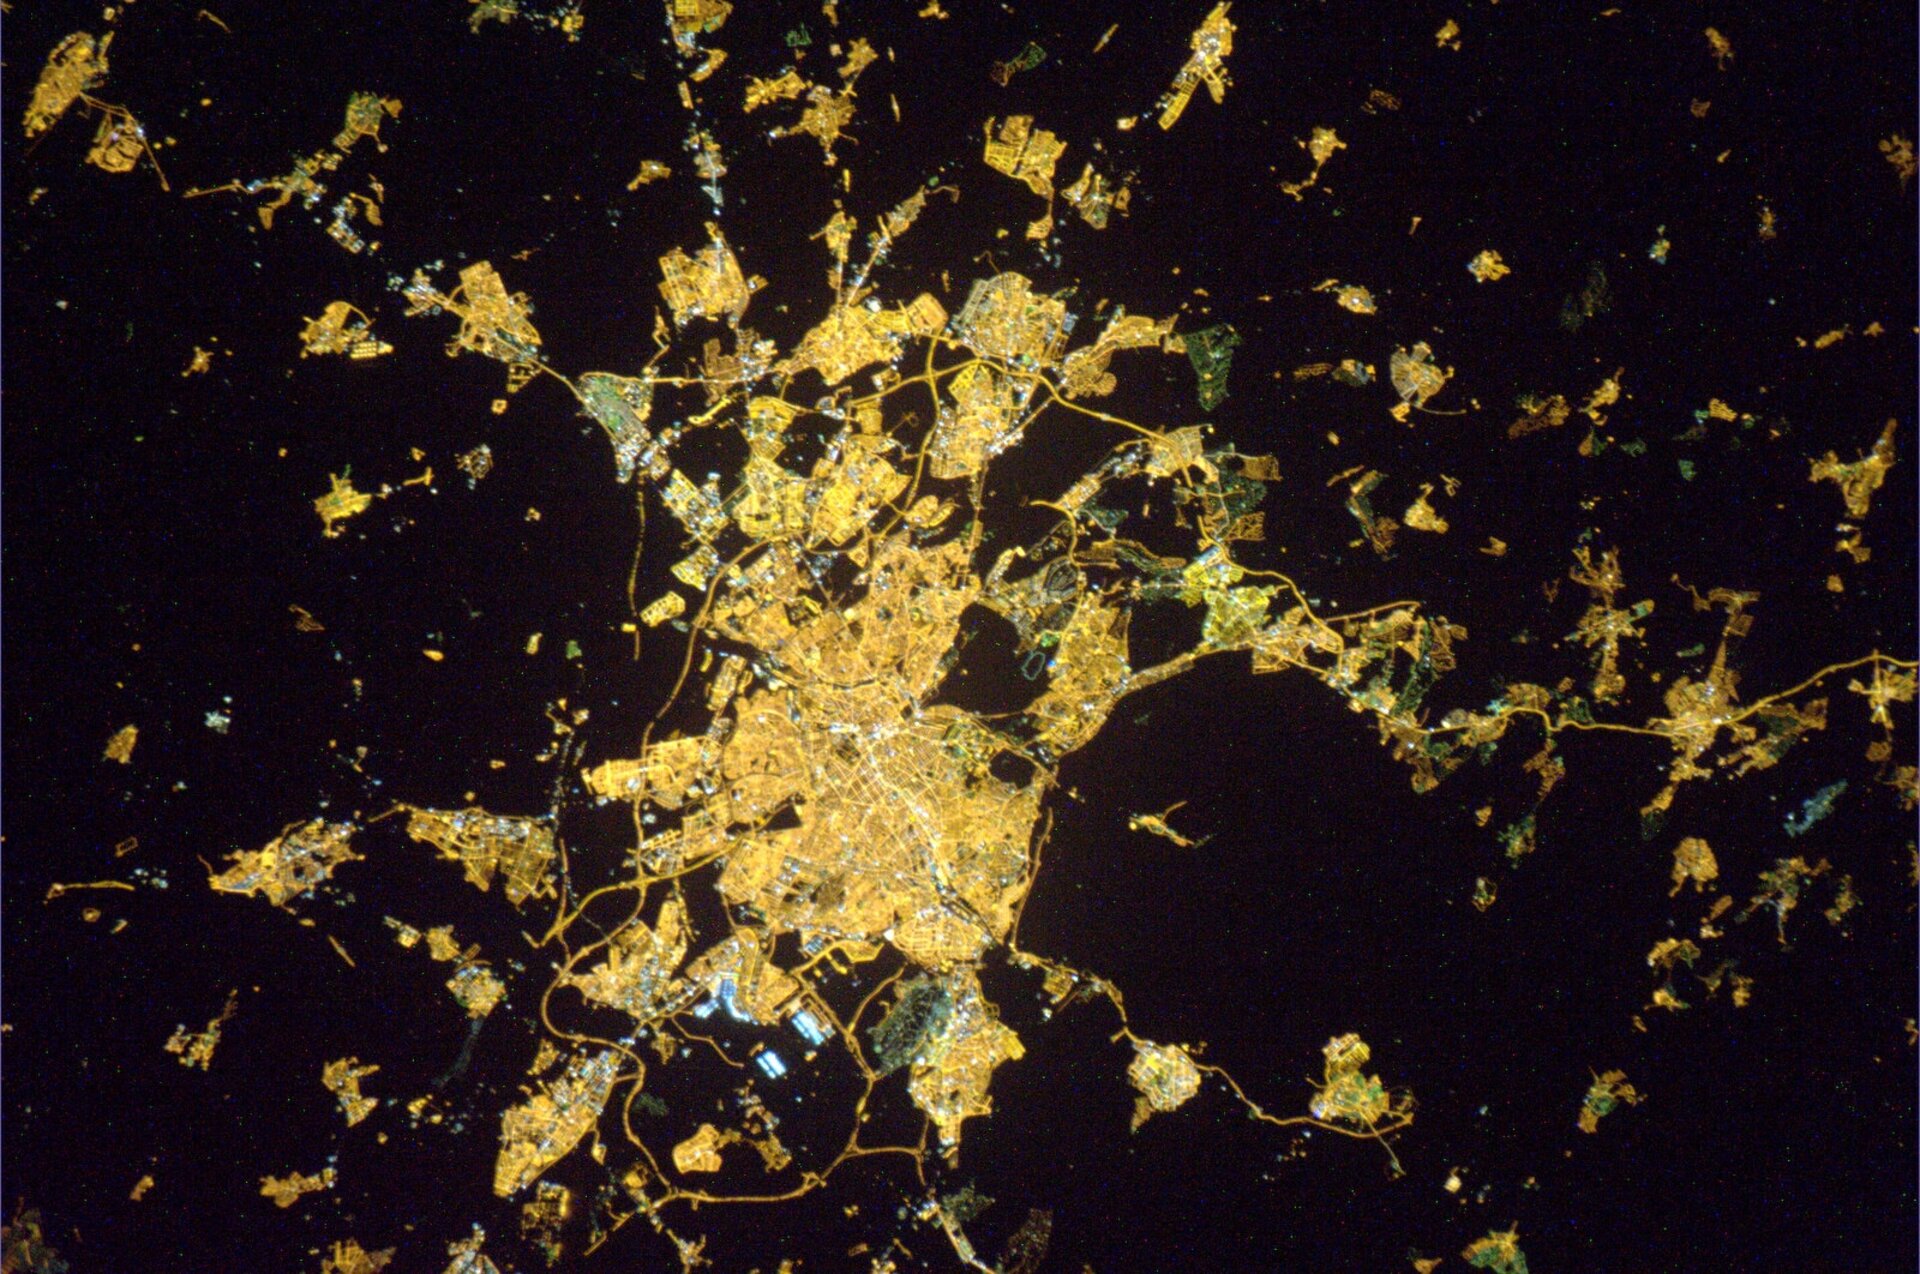 Vista nocturna de Madrid desde el espacio